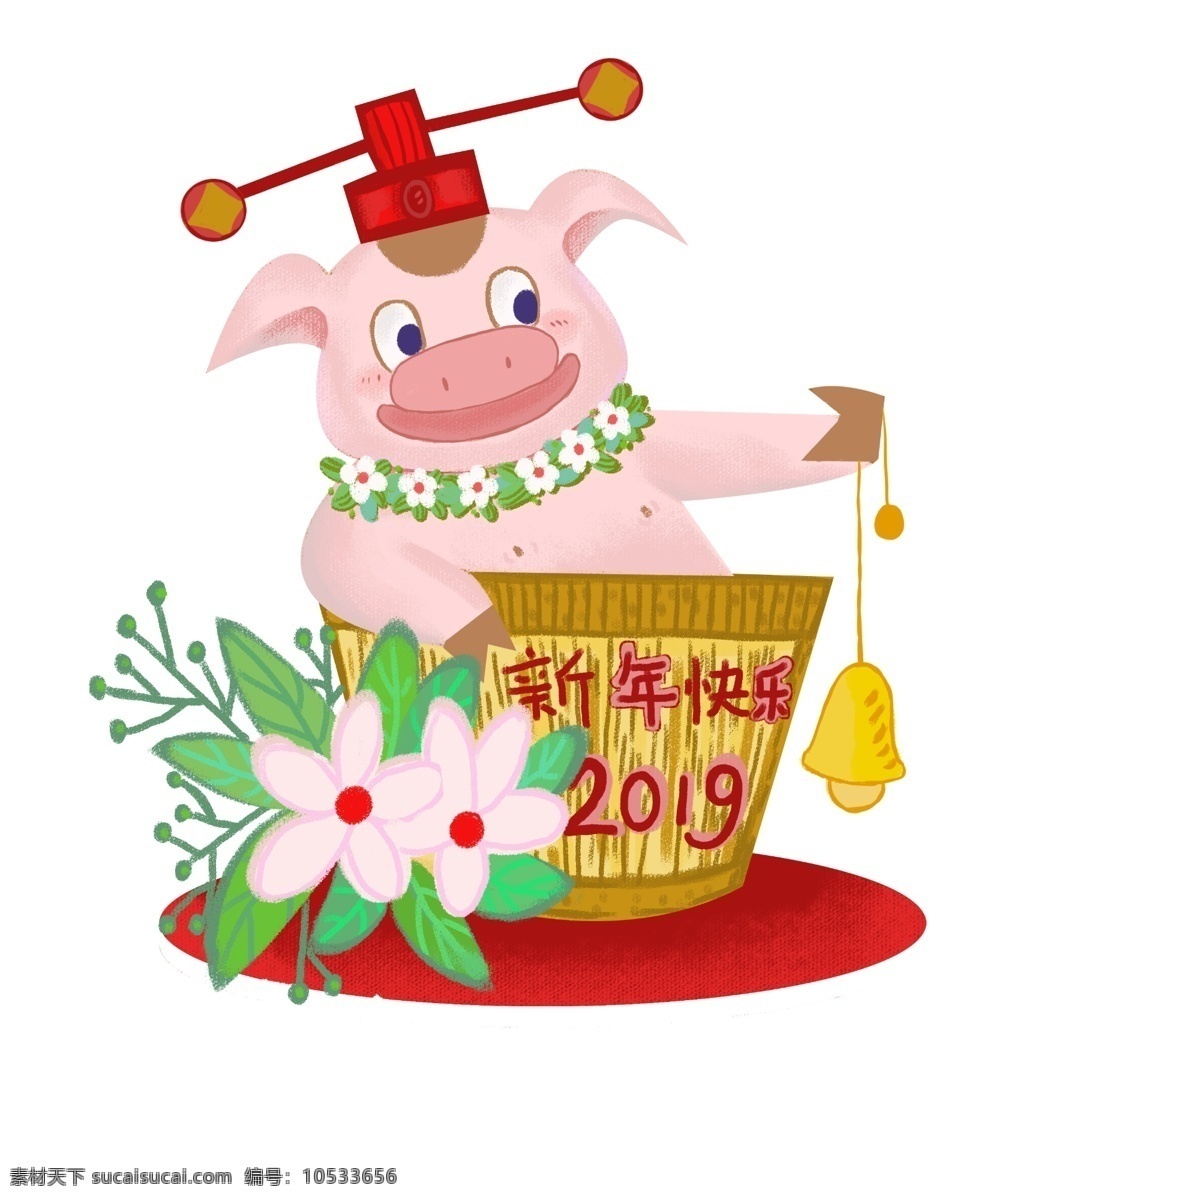 2019 年 春节 猪年 中国风 新年快乐 万事如意 恭喜发财 一帆风顺 新春 可爱猪 财神猪 心想事成 红红火火